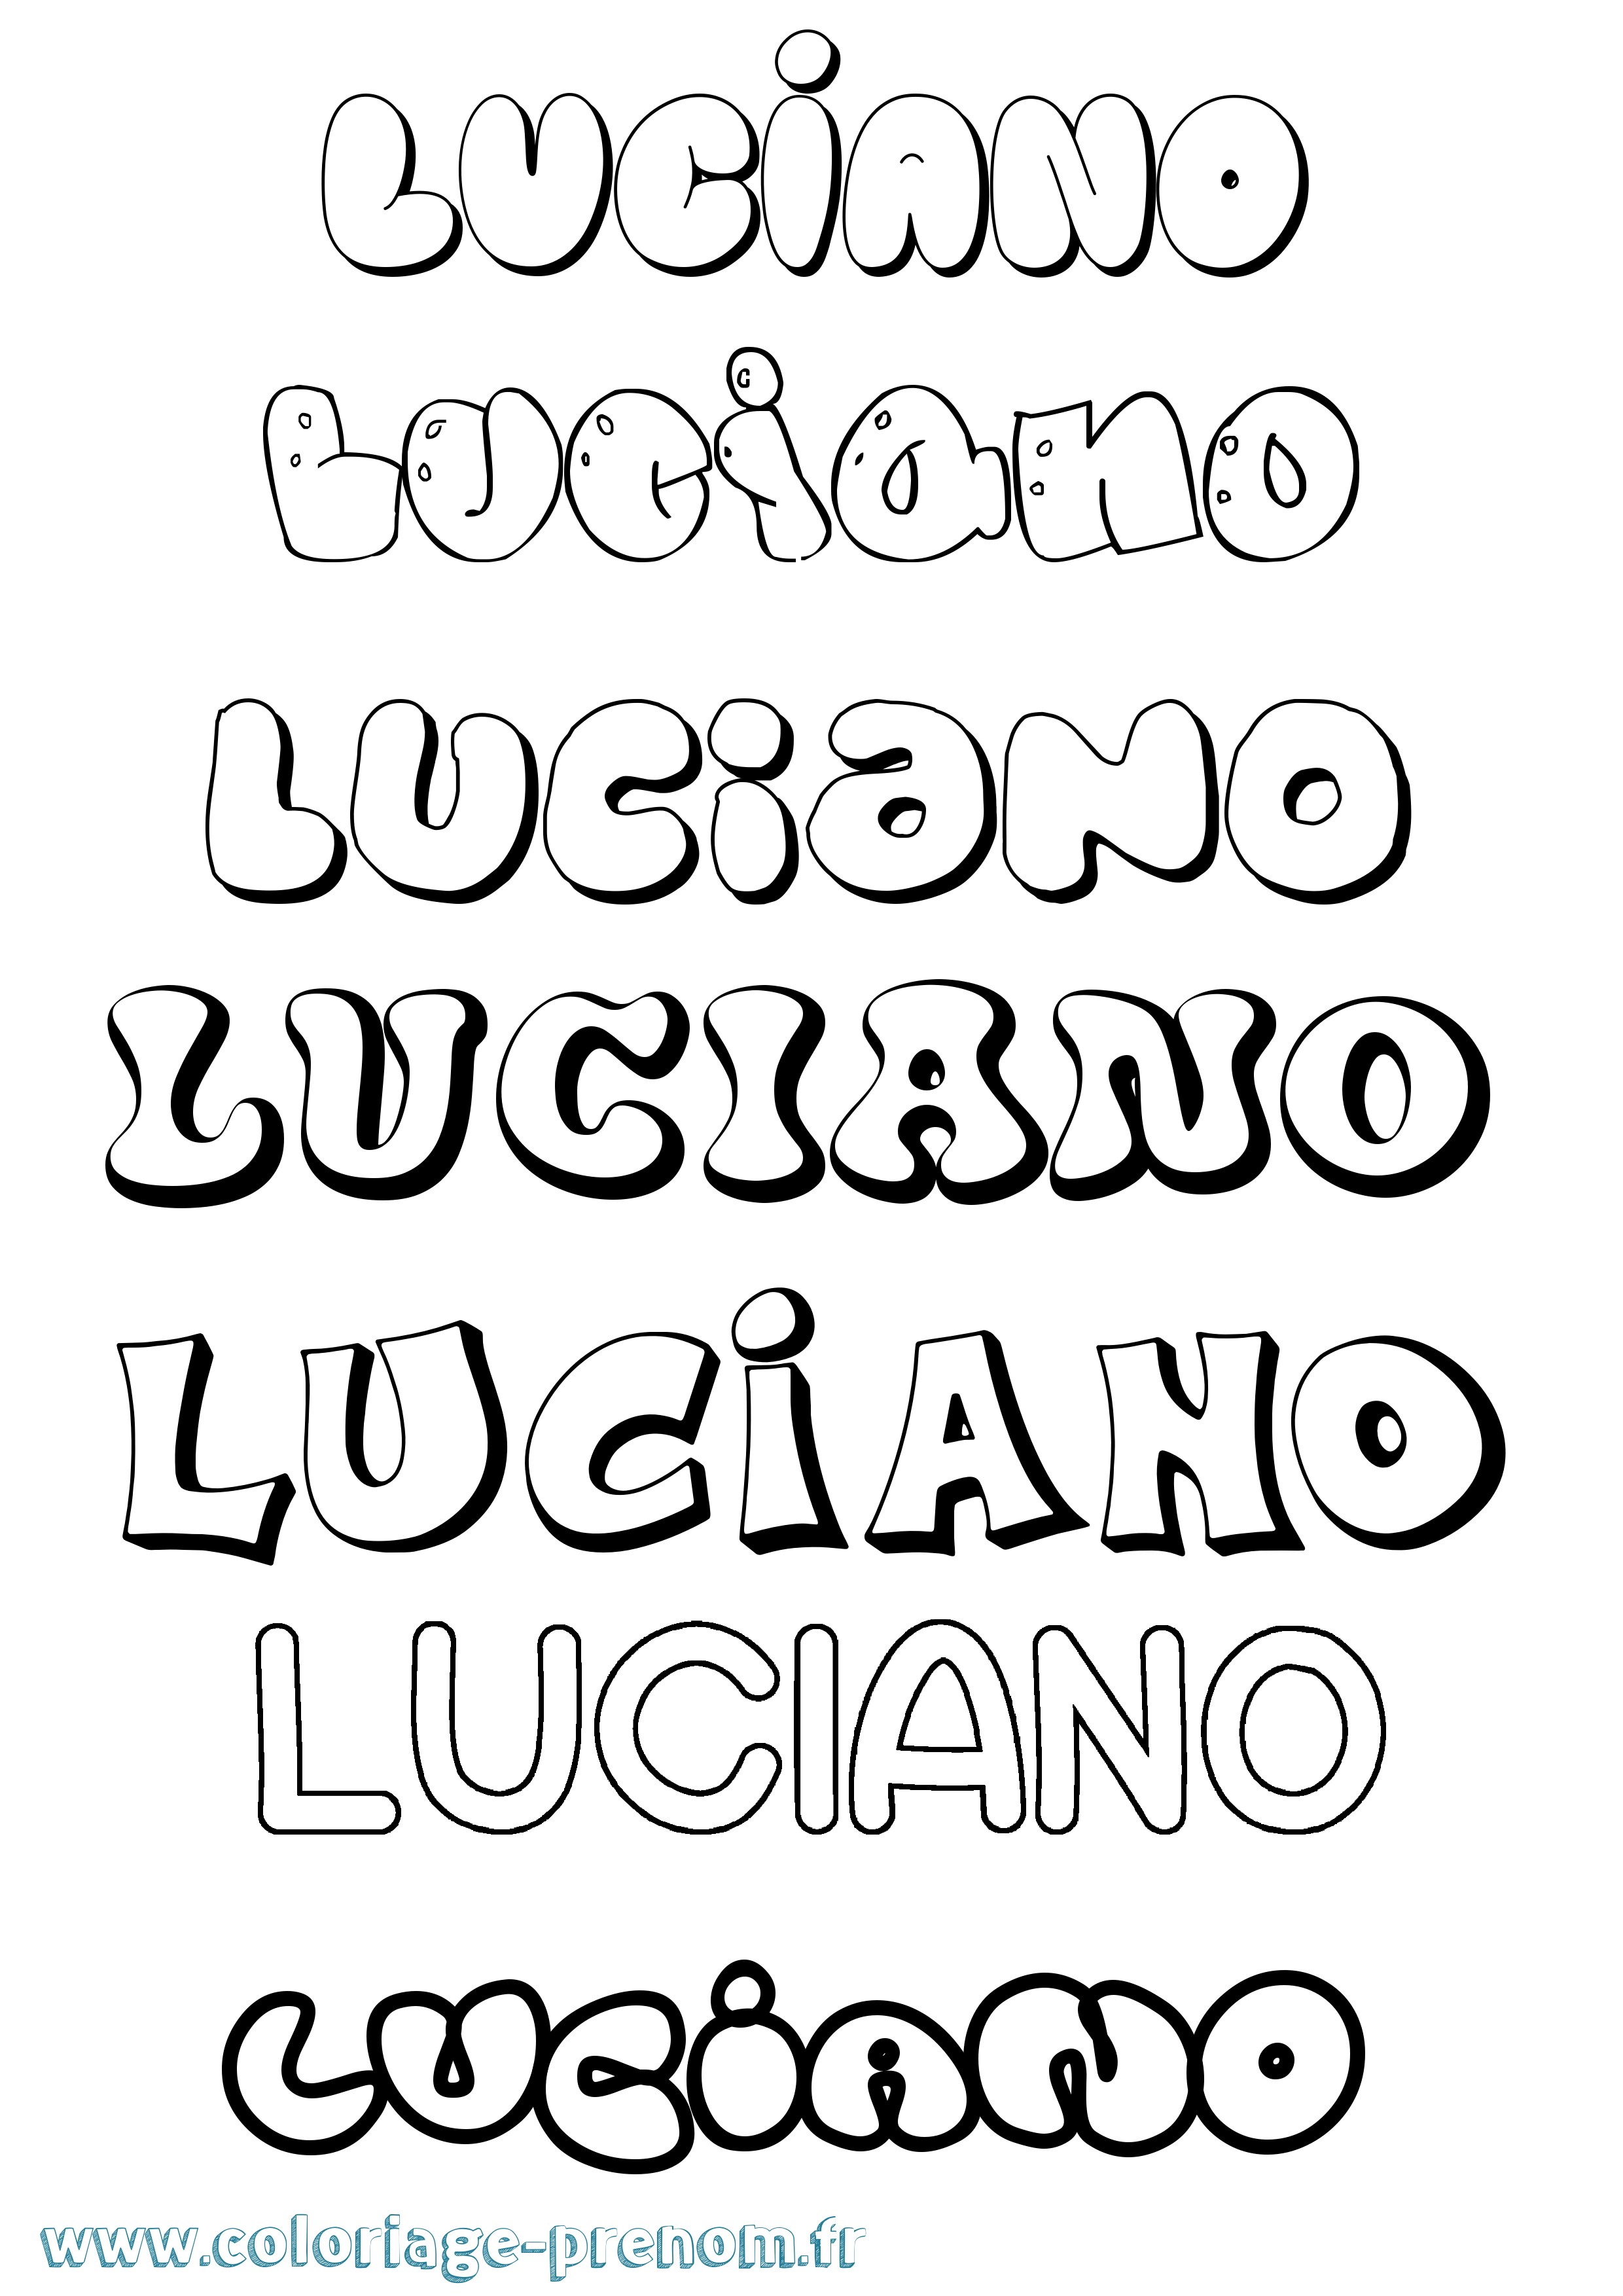 Coloriage prénom Luciano Bubble